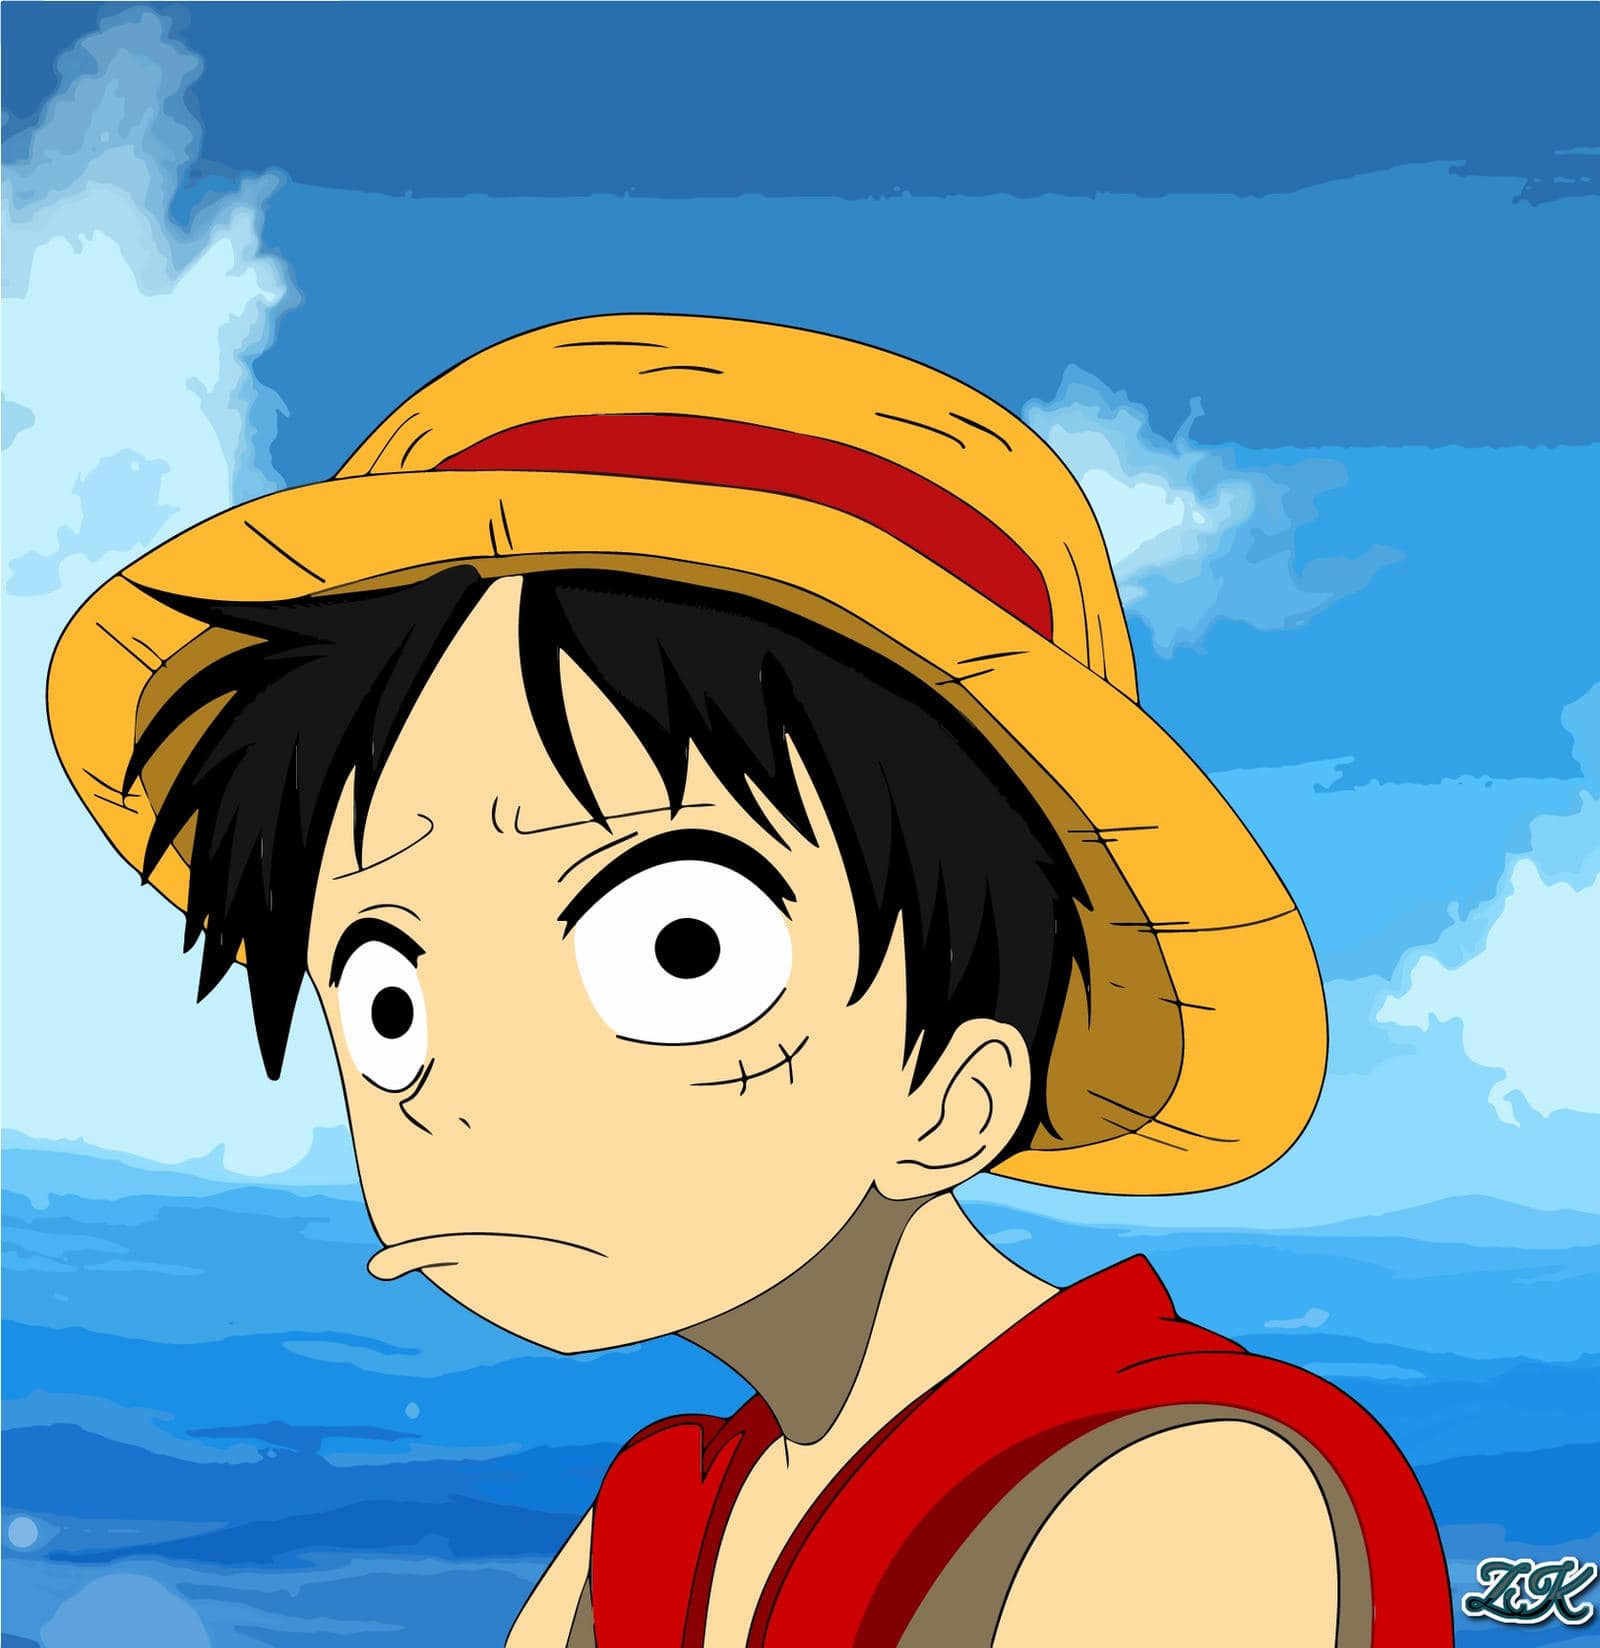 Luffy buồn khi nào? Cùng đến với bức ảnh Luffy buồn để hiểu rõ hơn về cảm xúc và tính cách này của nhân vật chính trong One Piece. Bạn sẽ nhận ra rằng, thậm chí người hùng cũng có lúc phải đương đầu với những cảm giác buồn bã trong cuộc sống.